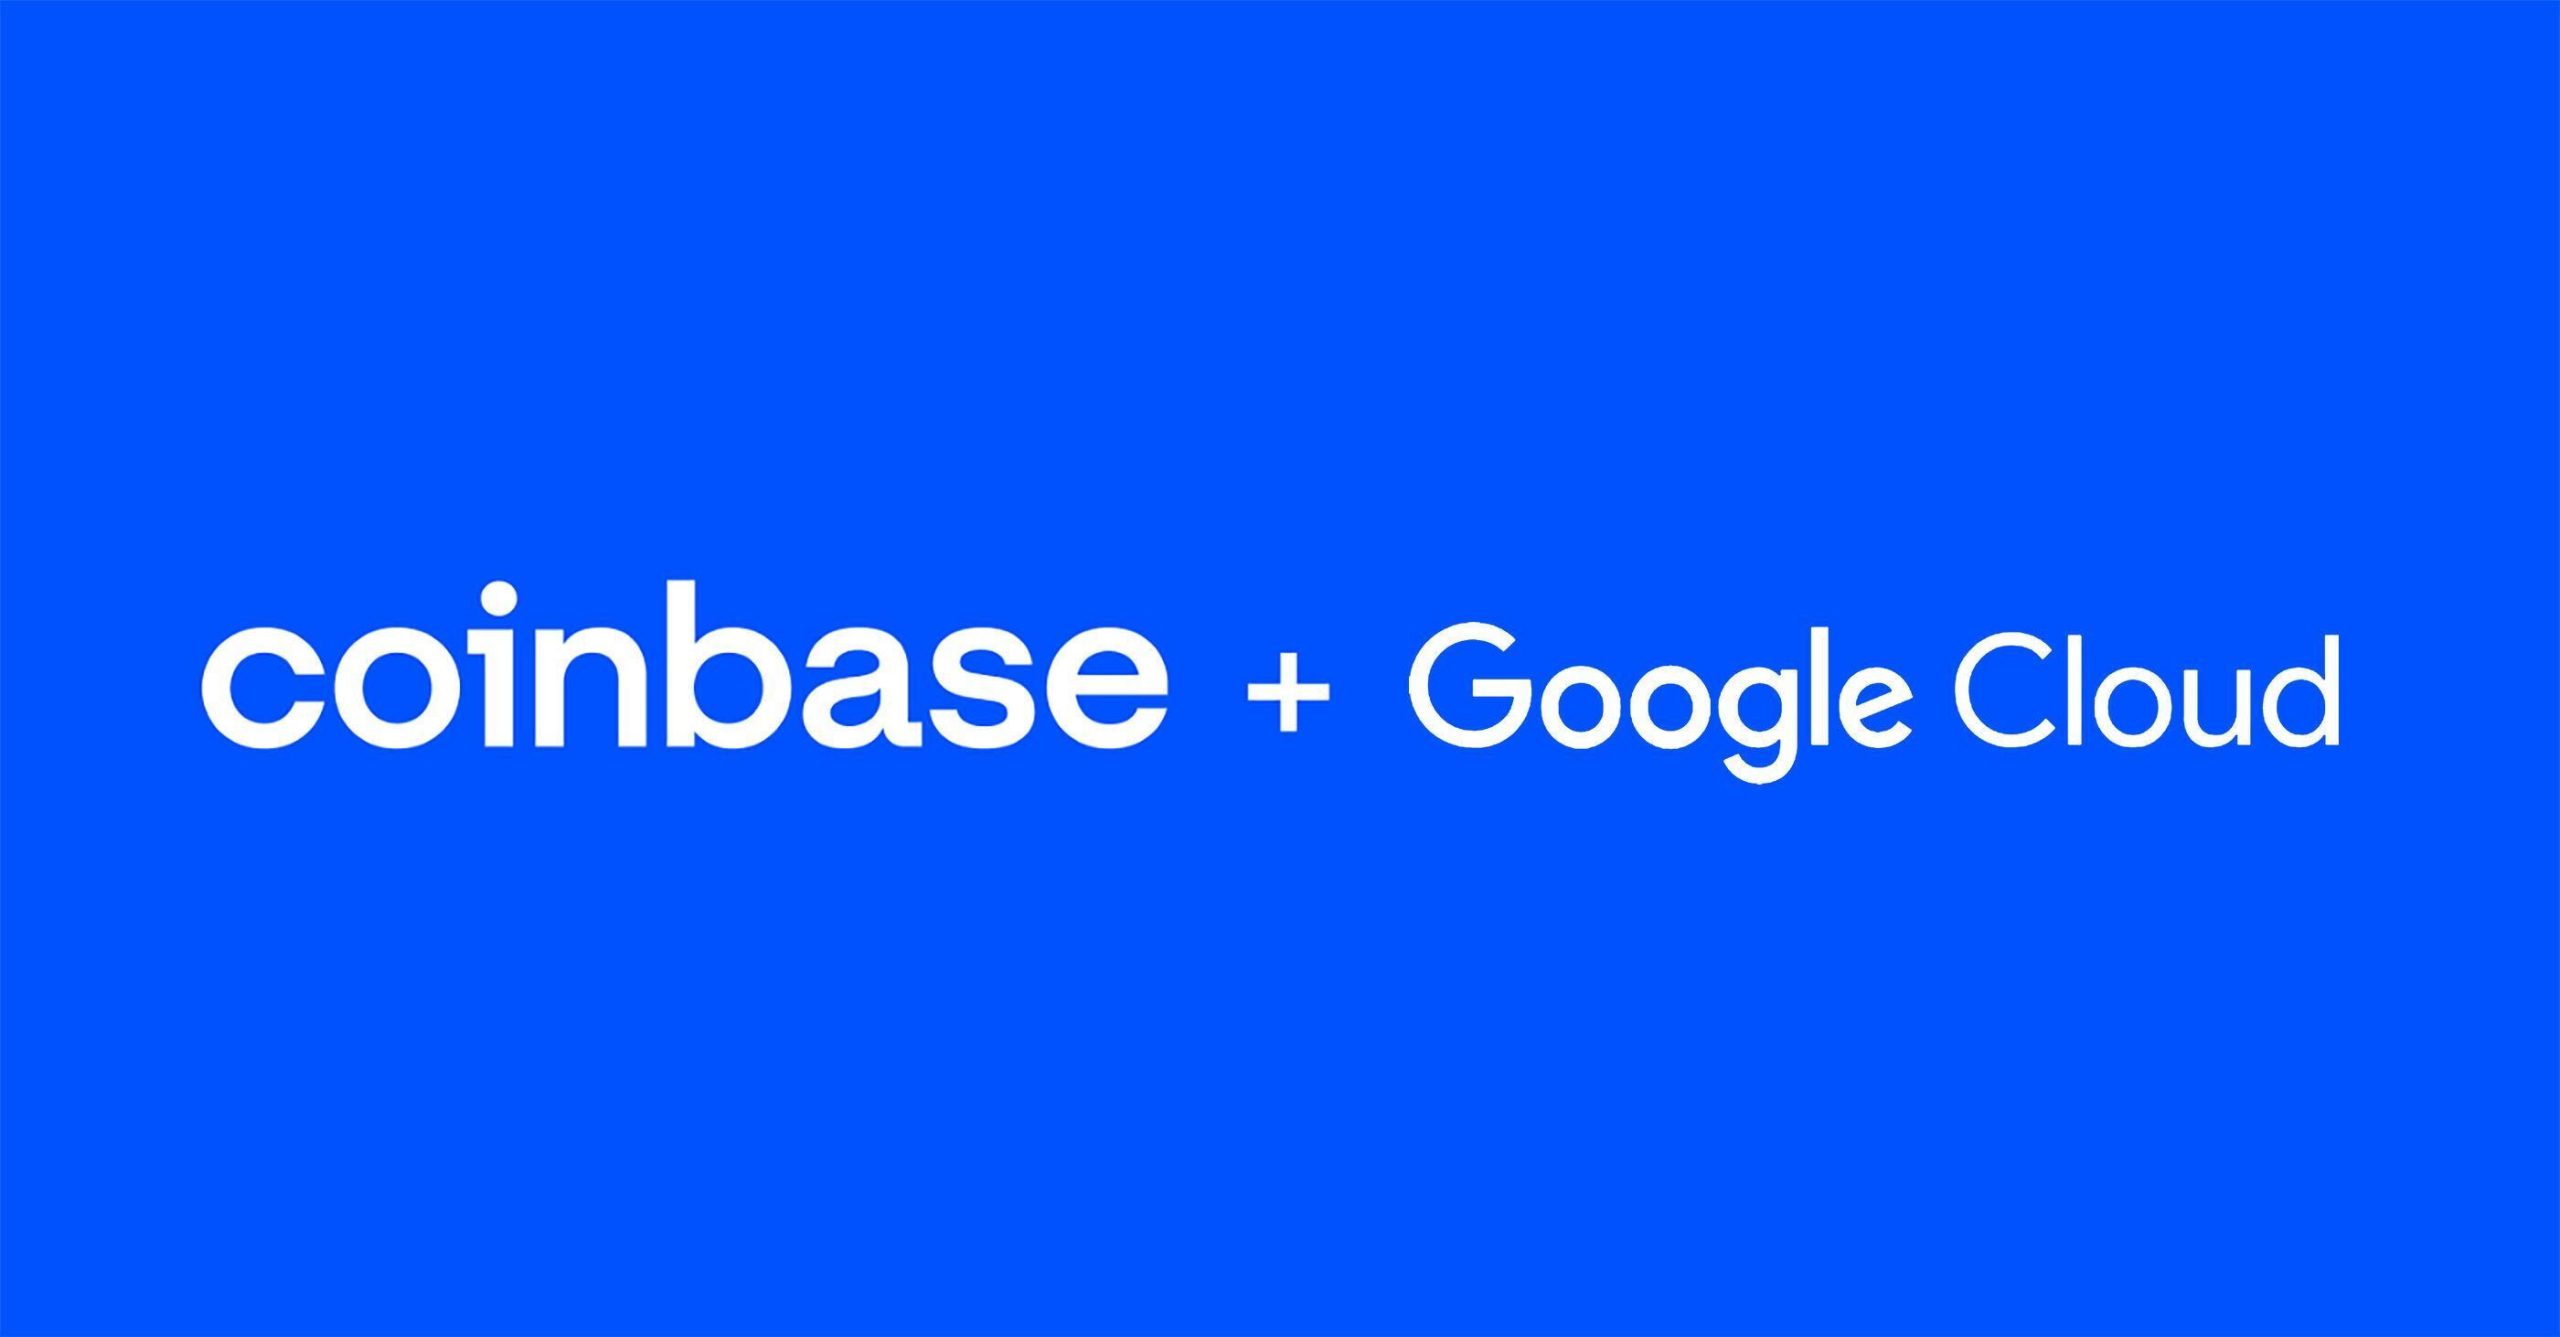 Google Cloud hợp tác Coinbase để chấp nhận thanh toán bằng tiền điện tử, thúc đẩy đổi mới Web3